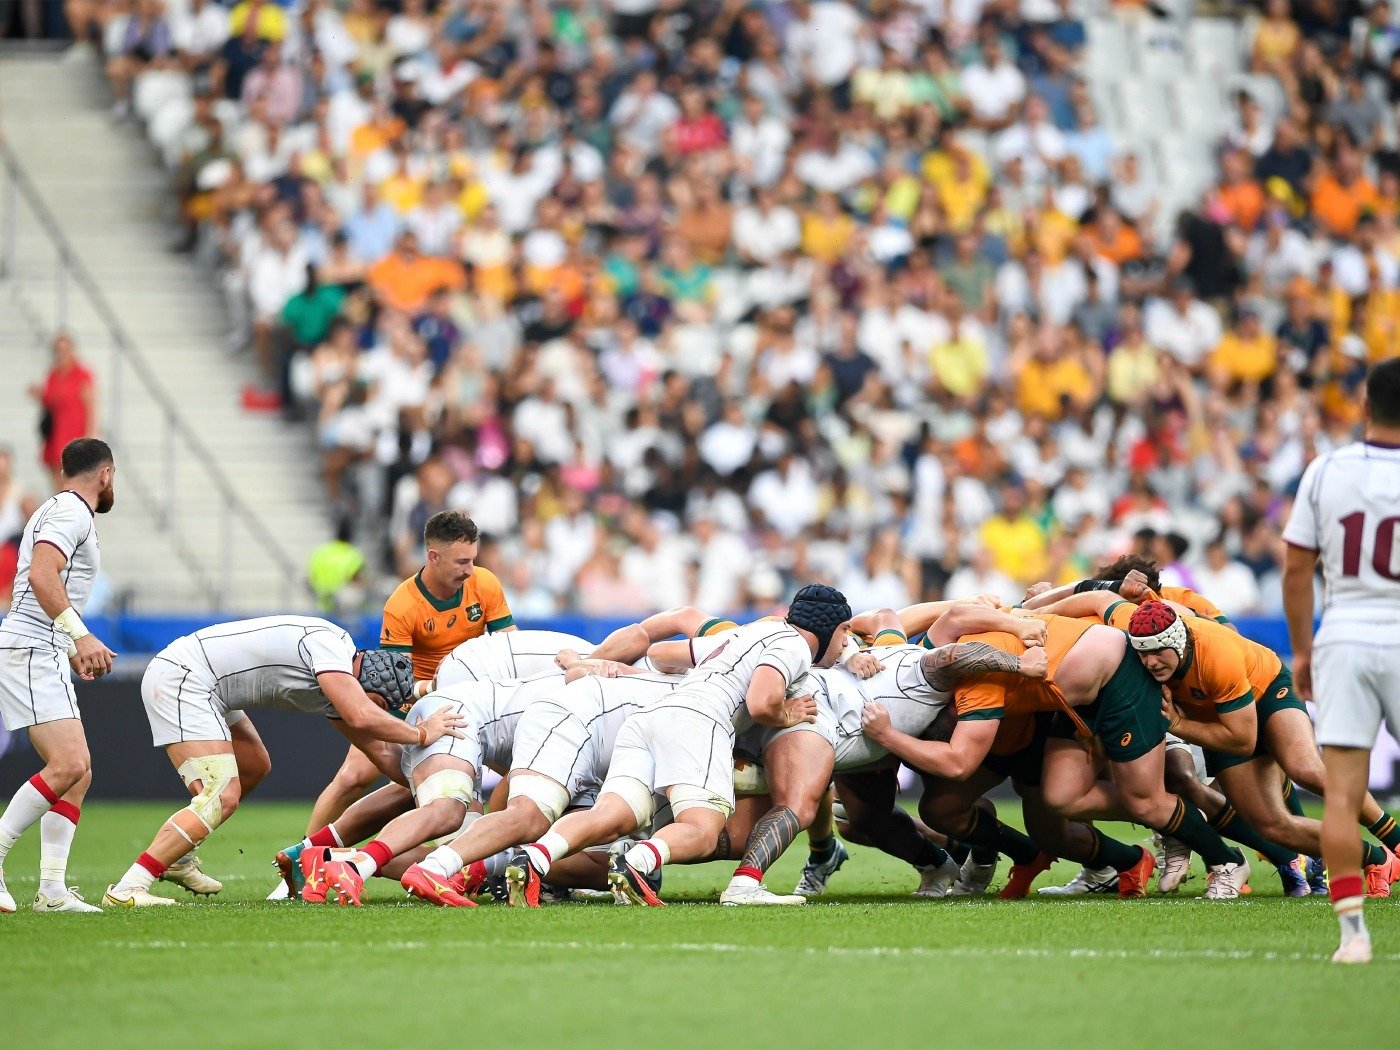 Rugby: o que é, história e origem e regras do jogo - Toda Matéria